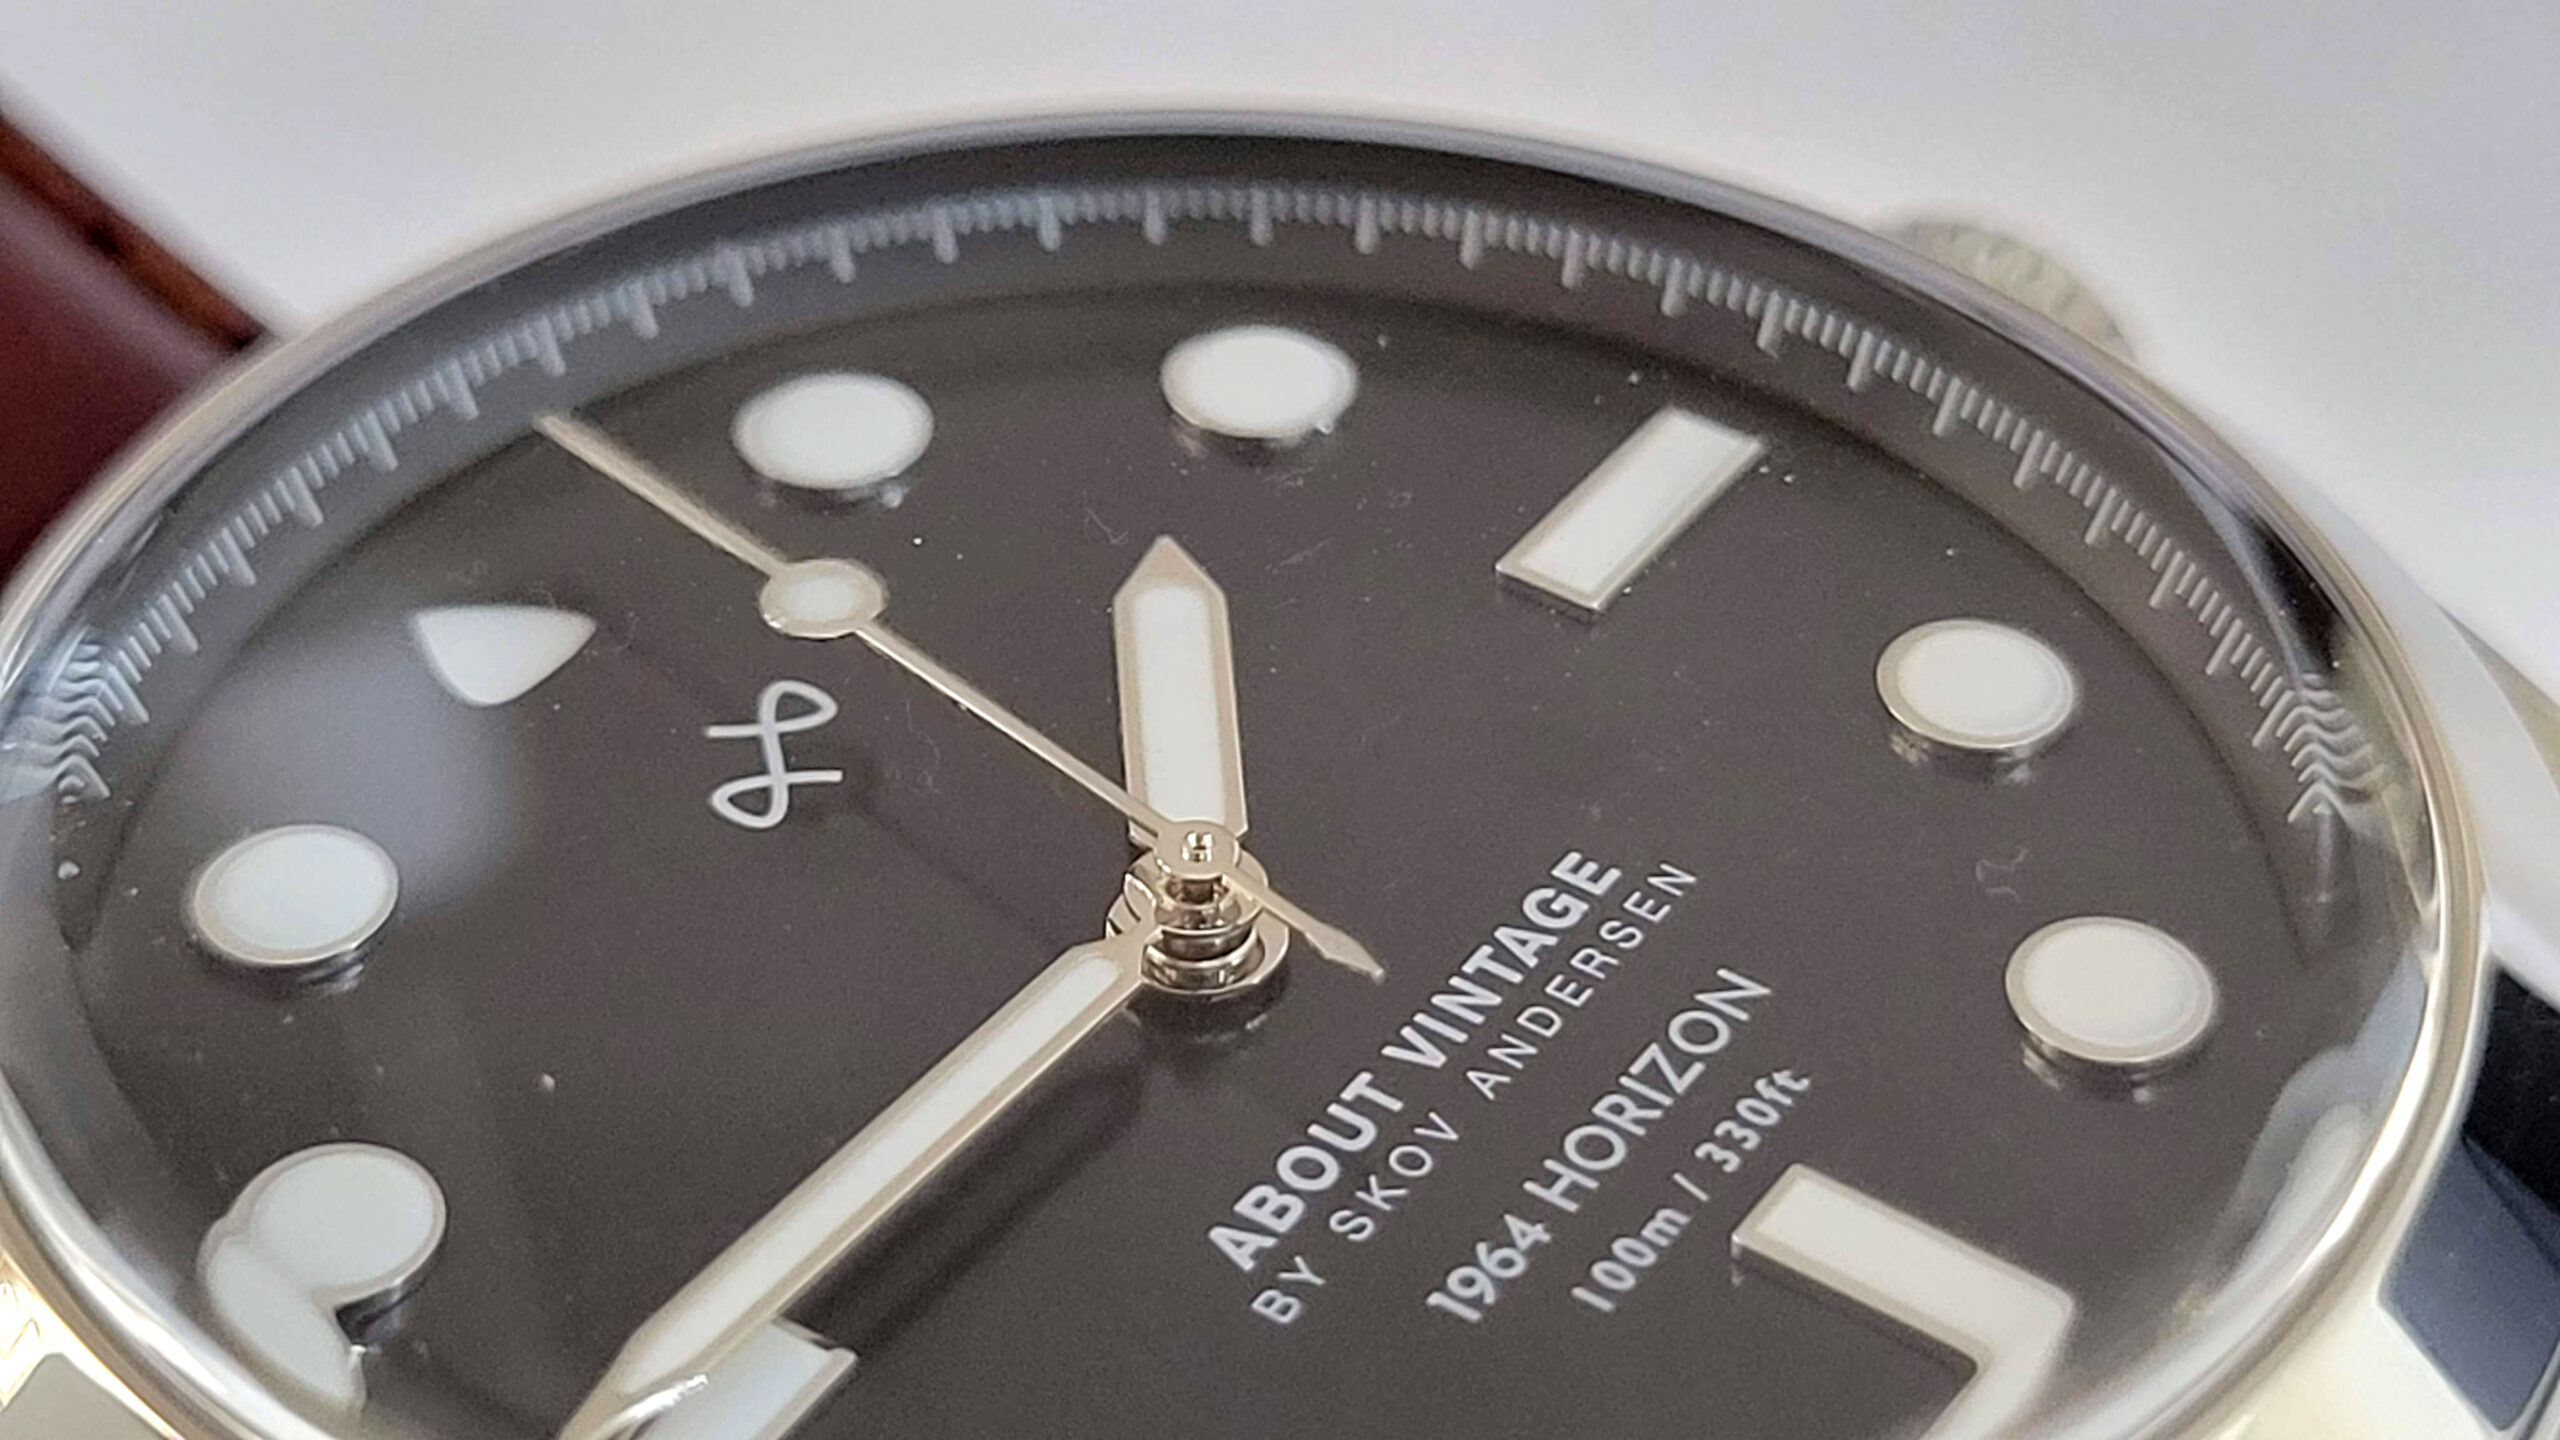 ラグジュアリー腕時計About Vintage 「1964 HORIZON」をレビュー